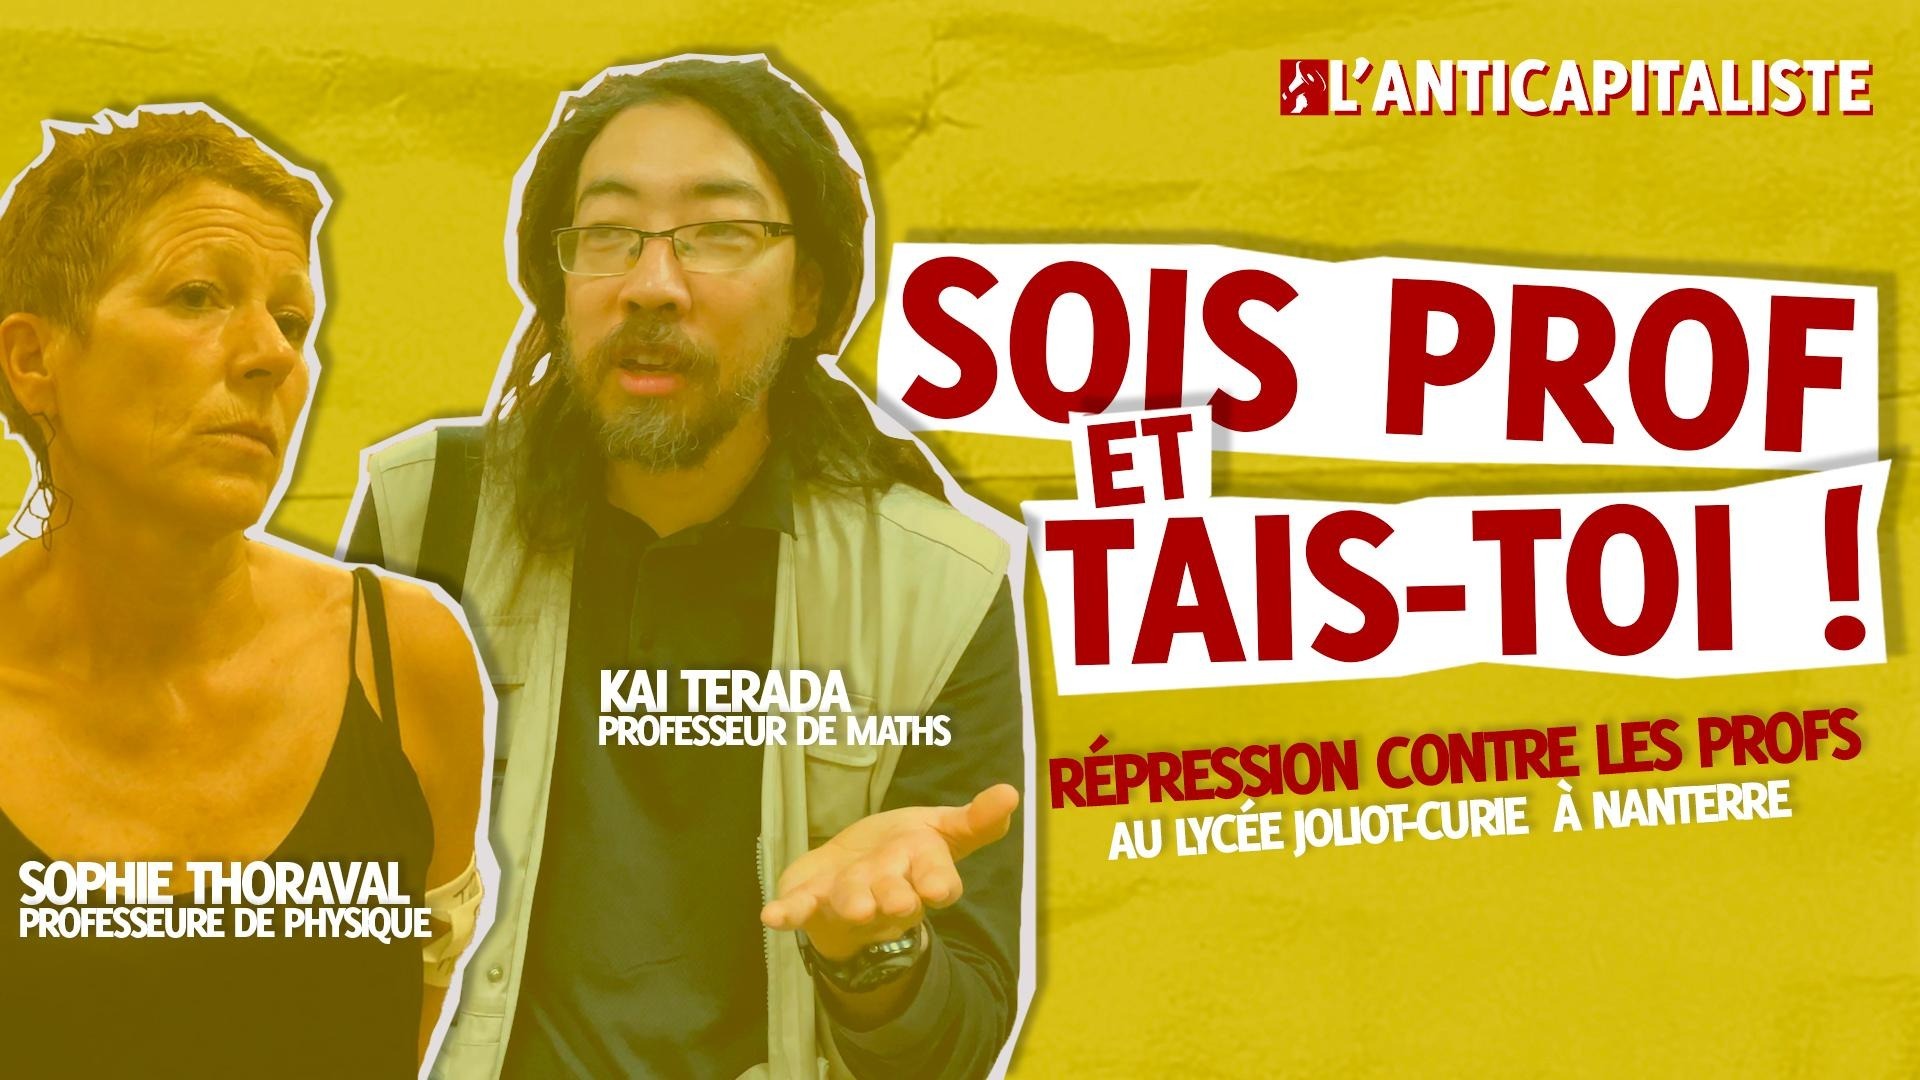 Éducation/répression : réintégration immédiate de Kai Terada ! |  L'Anticapitaliste